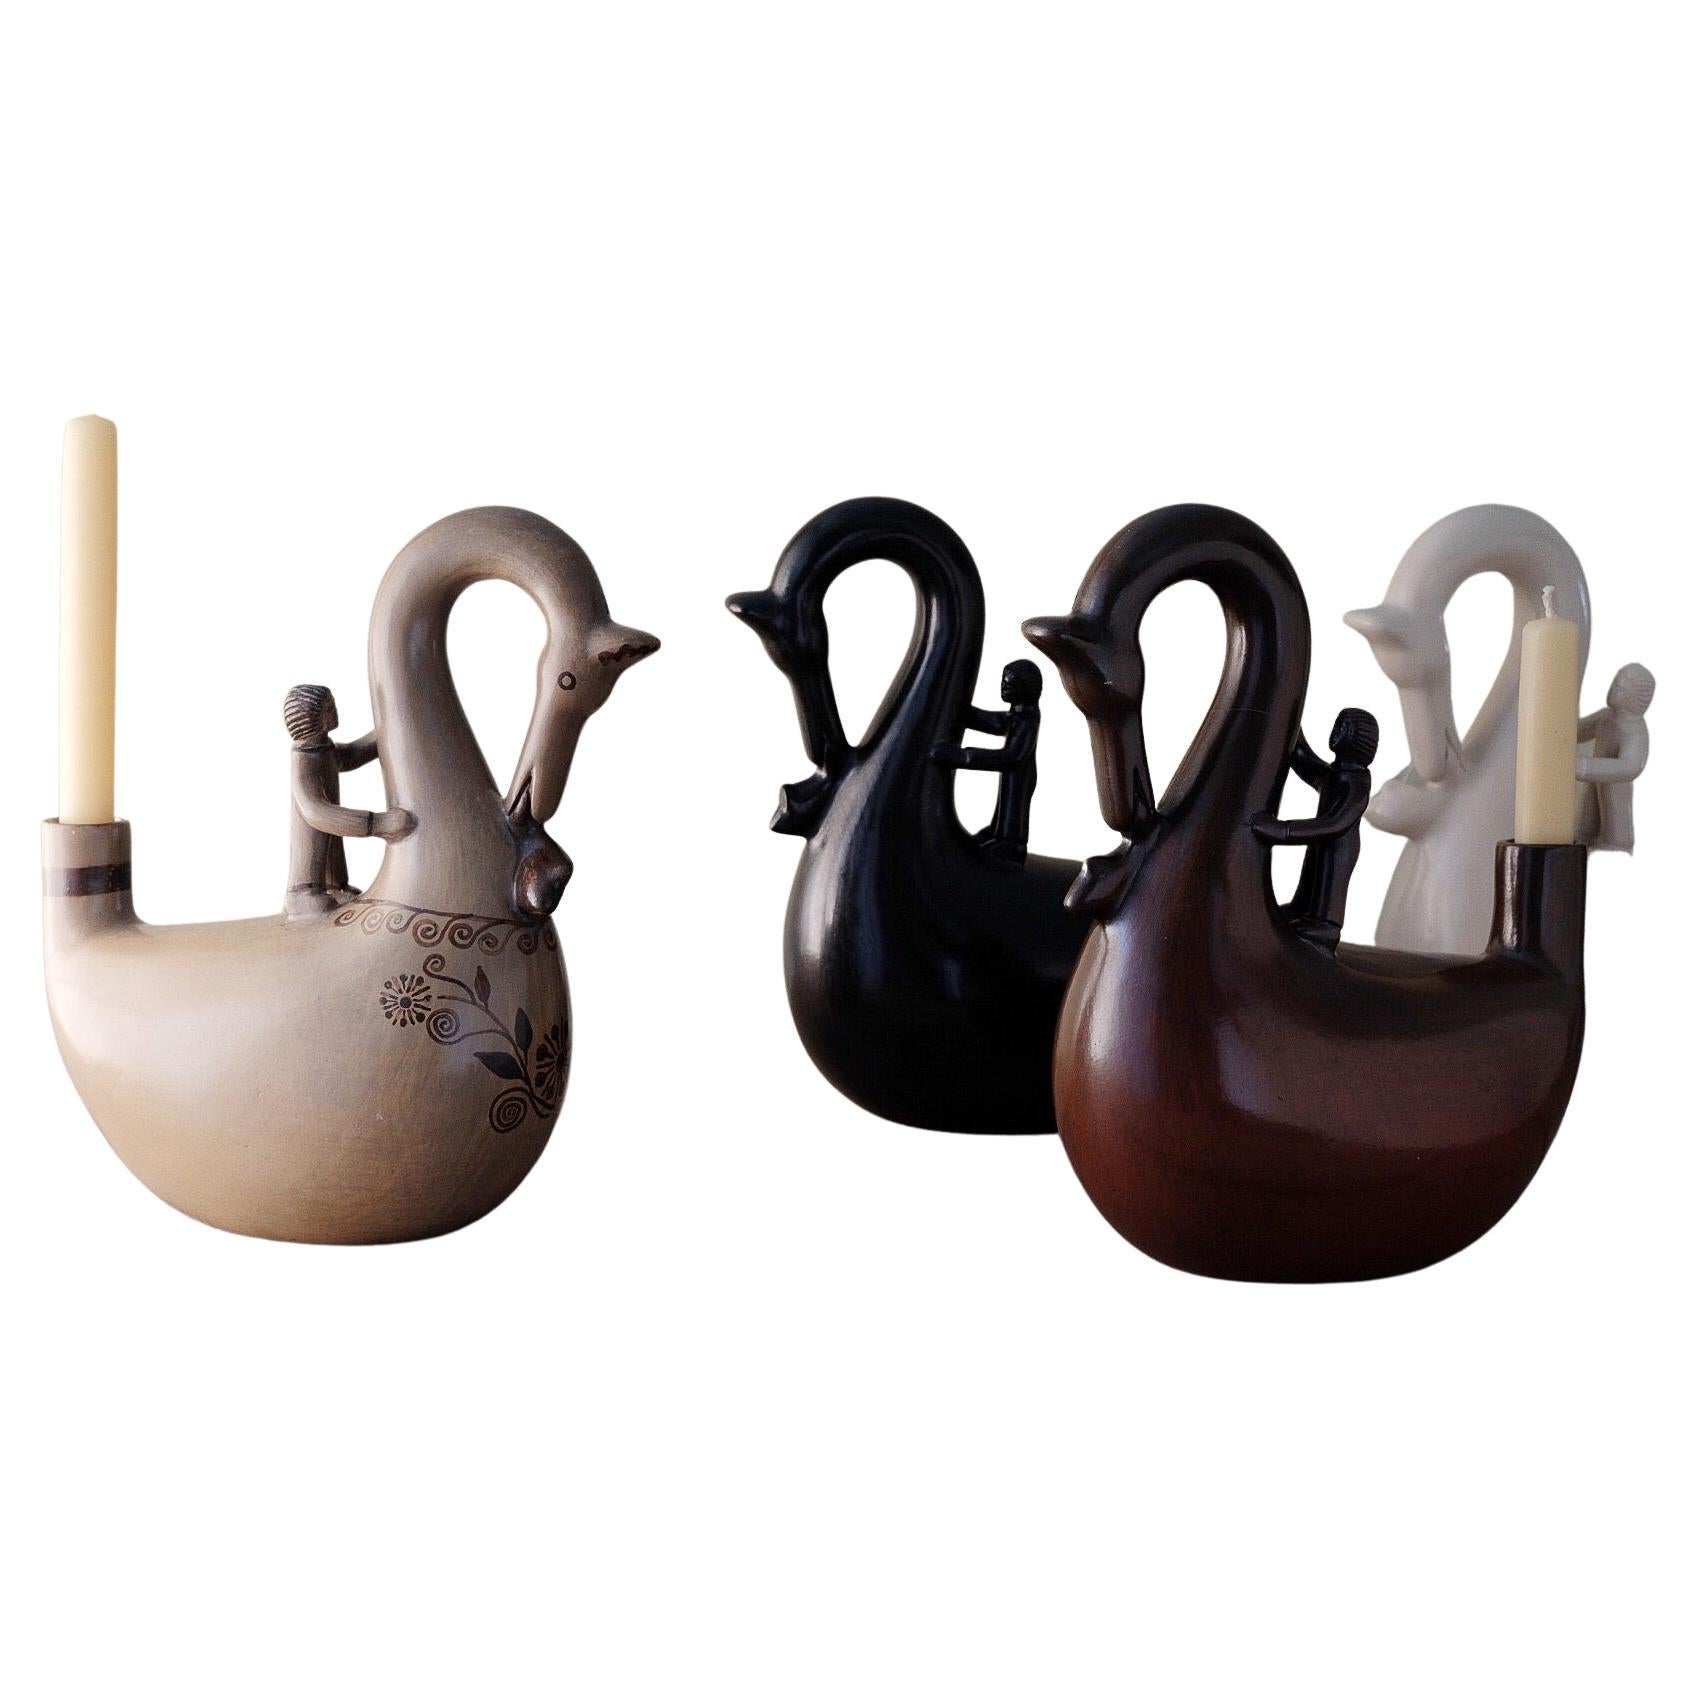 Set von 3 Acatln Tototl-Kerzenhaltern von Onora